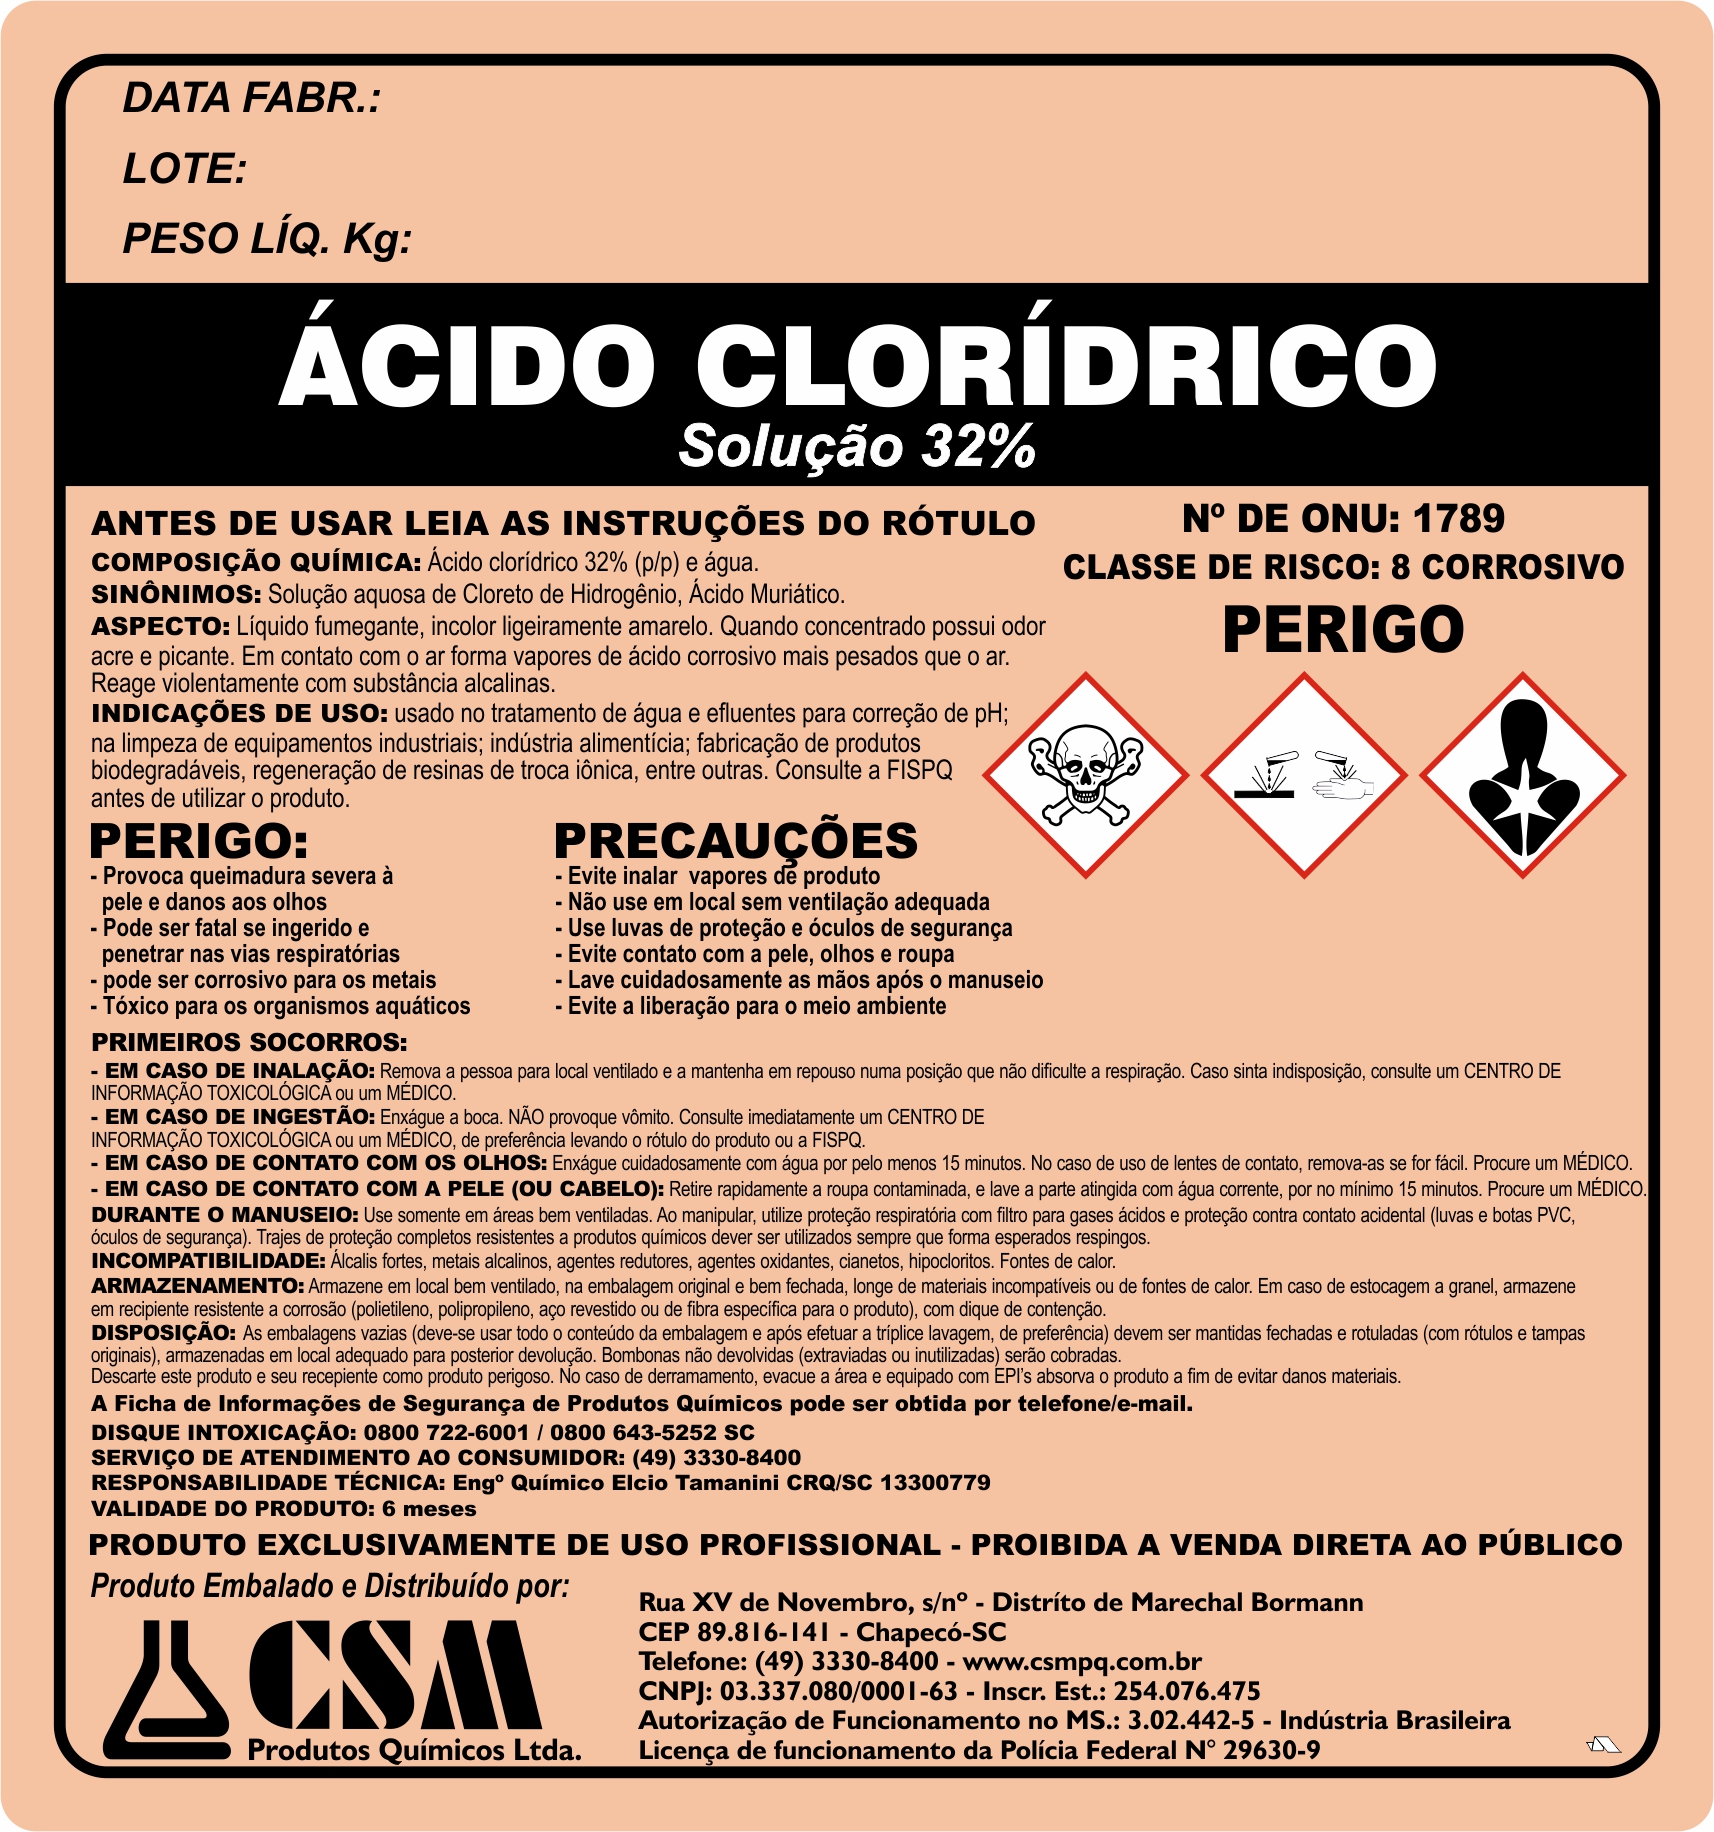 Acido cloridrico